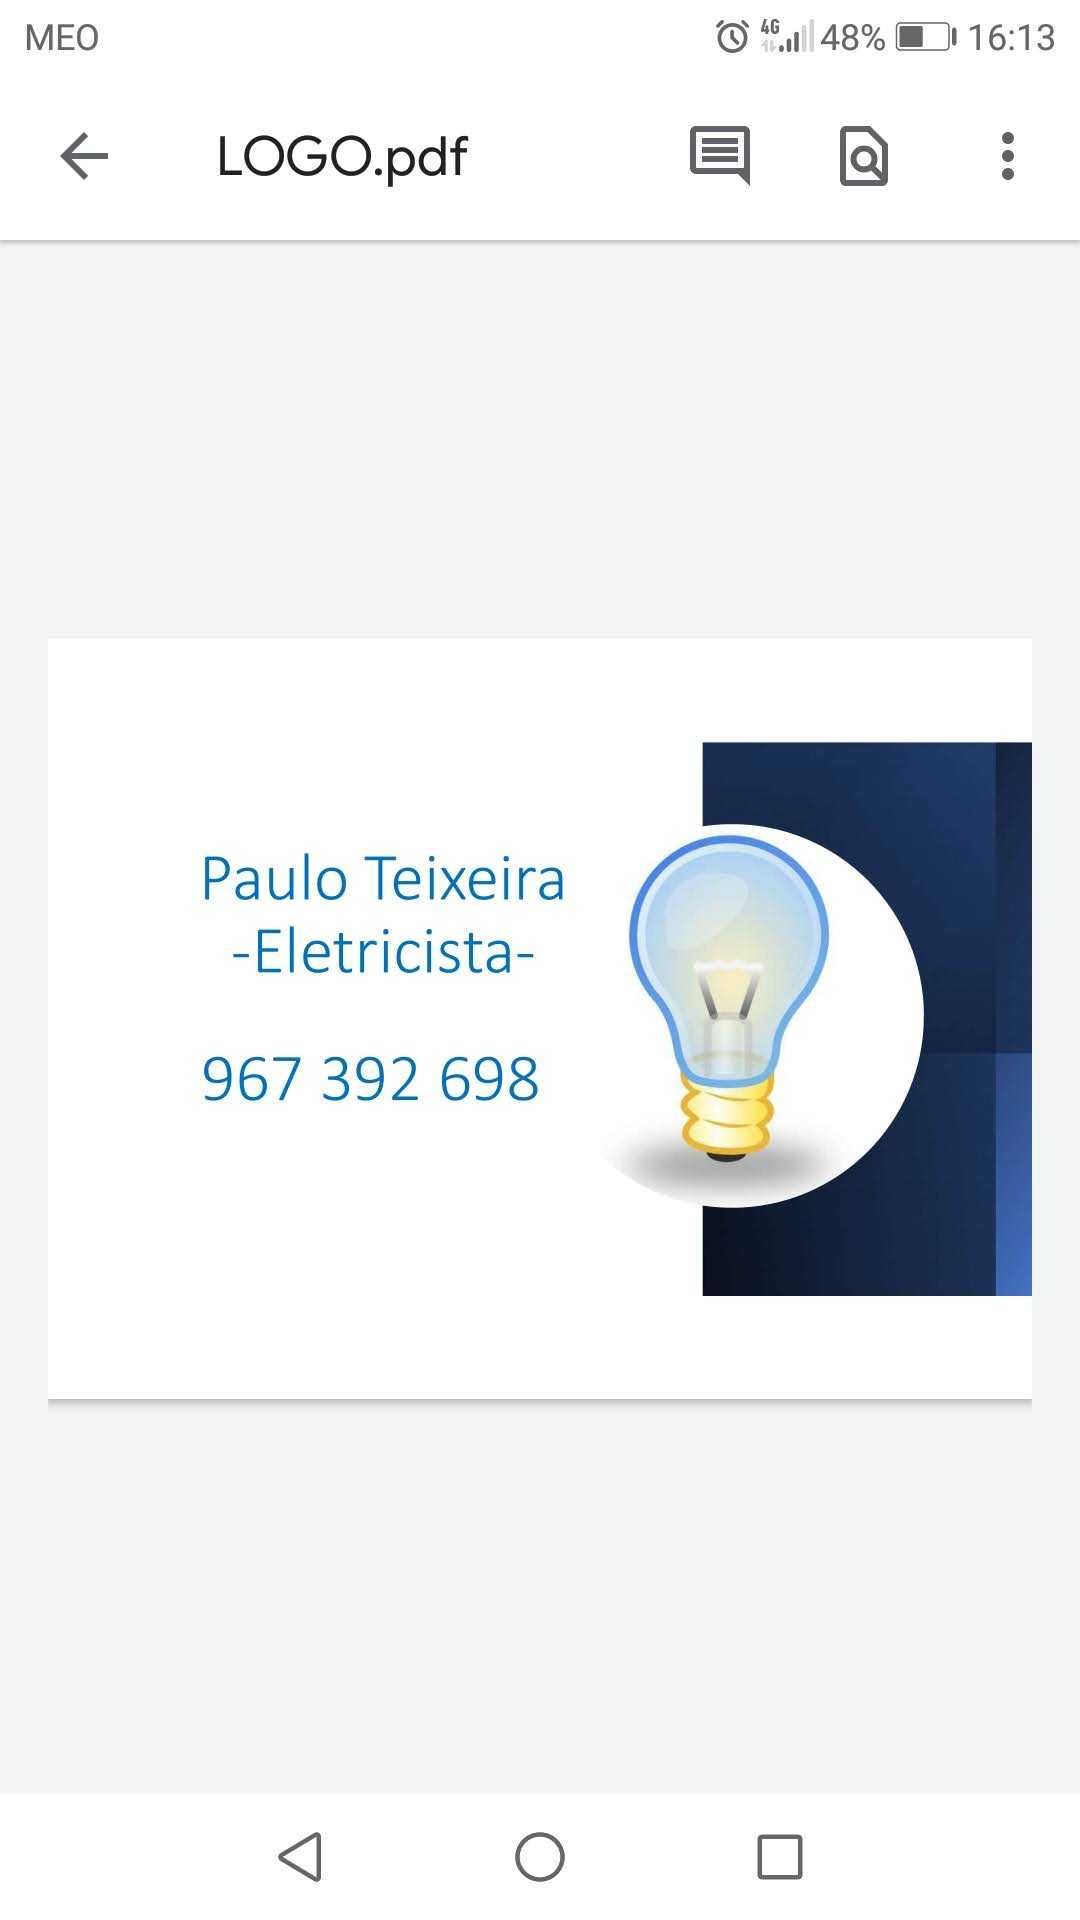 Paulo Teixeira - Eletricista